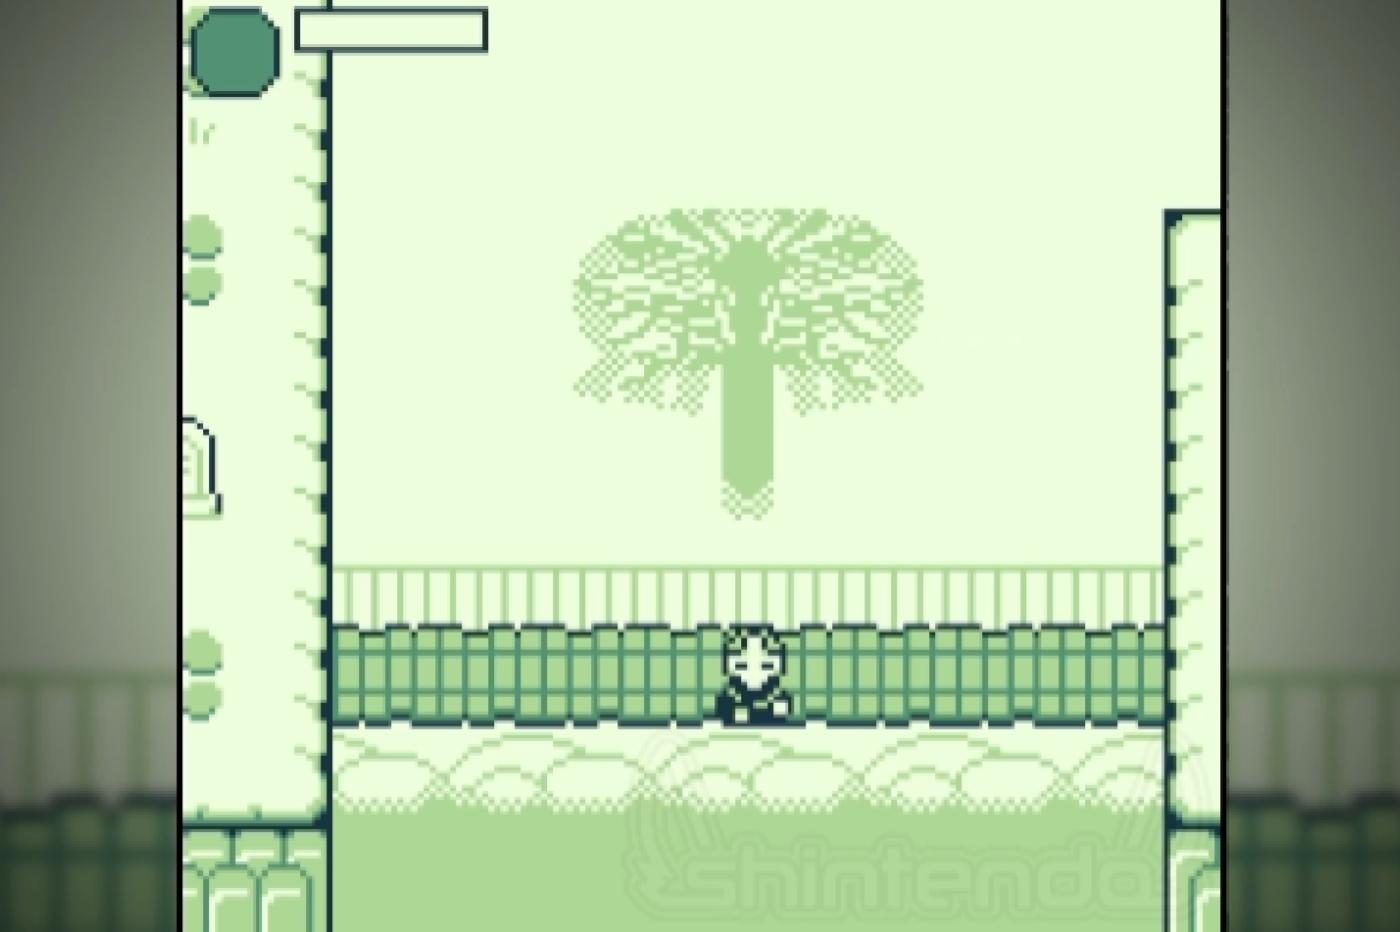 Capture d'écran du demake d'Elden Ring avec le personnage principal devant l'arbre géant du jeu, en version miniature pour la portable de Nintendo